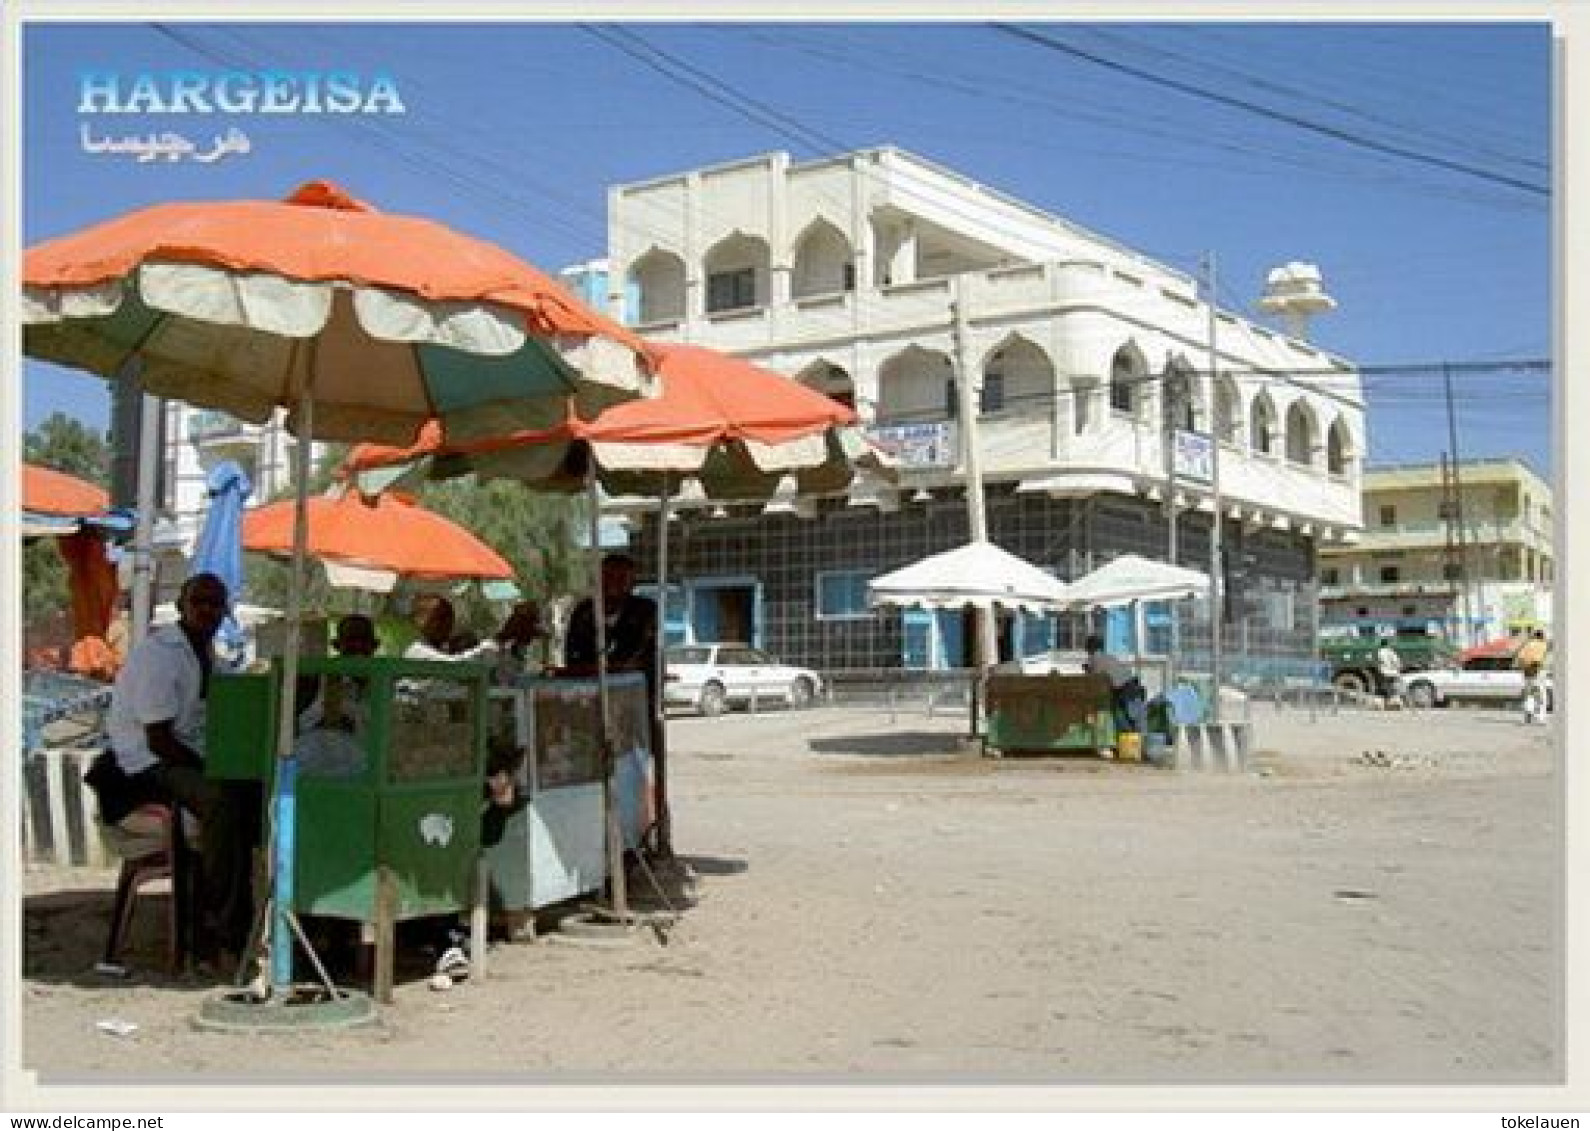 Somalia Somaliland Africa Afrique - Somalie